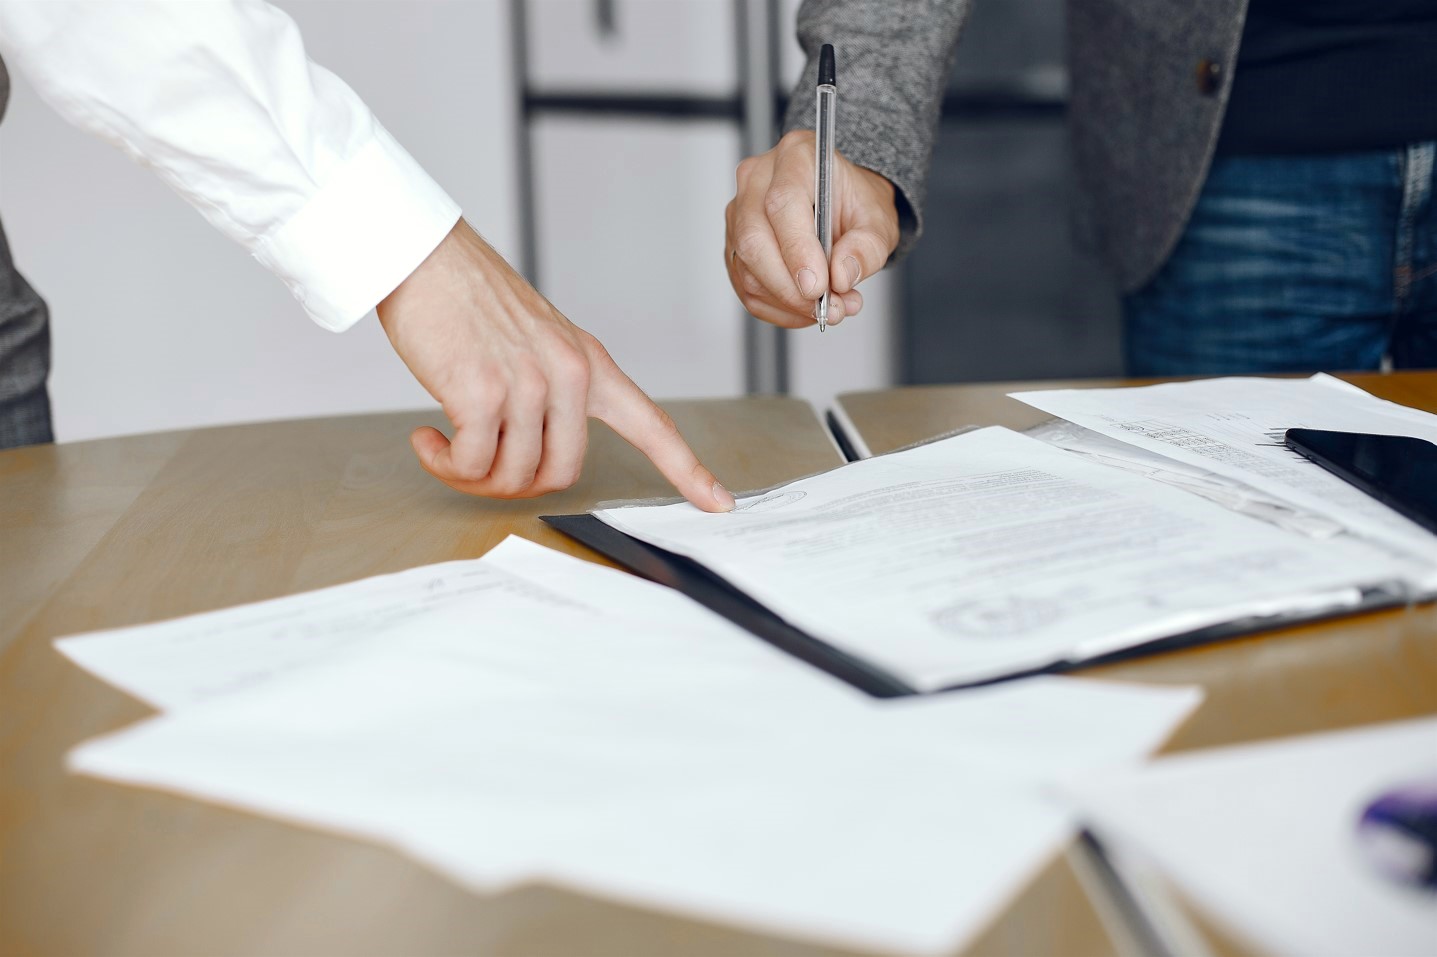 Una mano señala un documento mientras otra mano acerca un bolígrafo para firmar